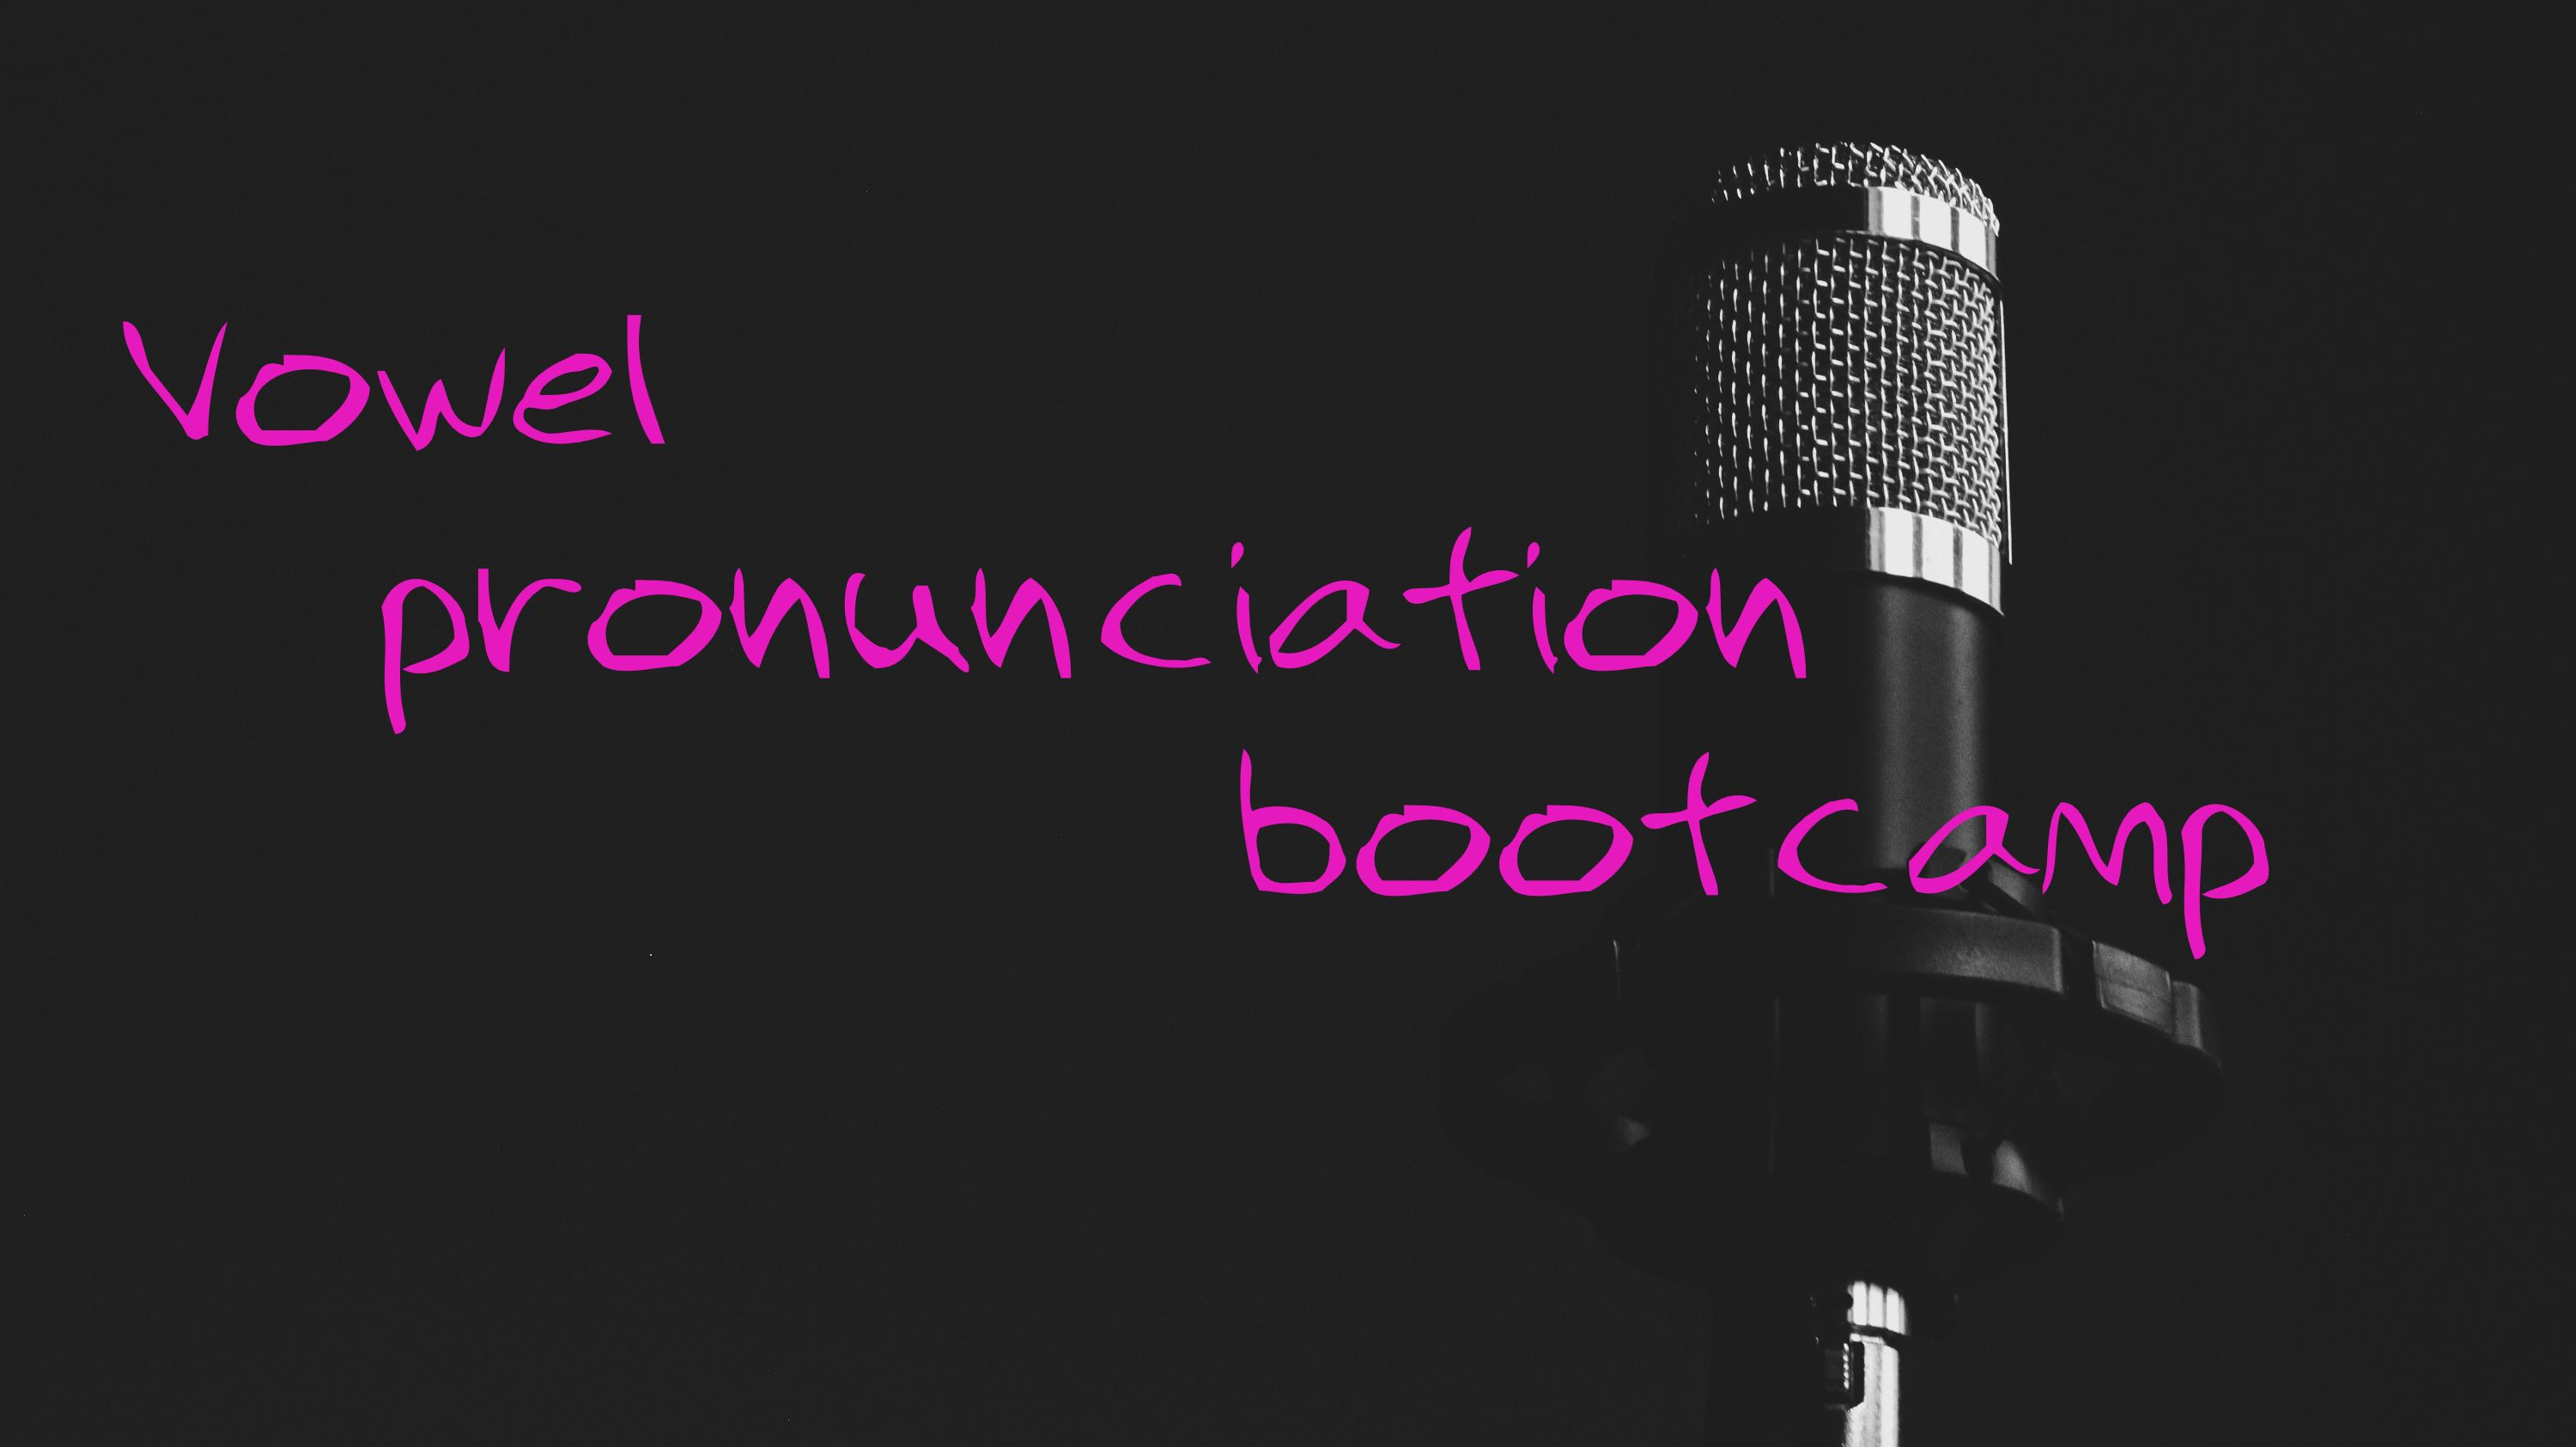 Vowel pronunciation bootcamp